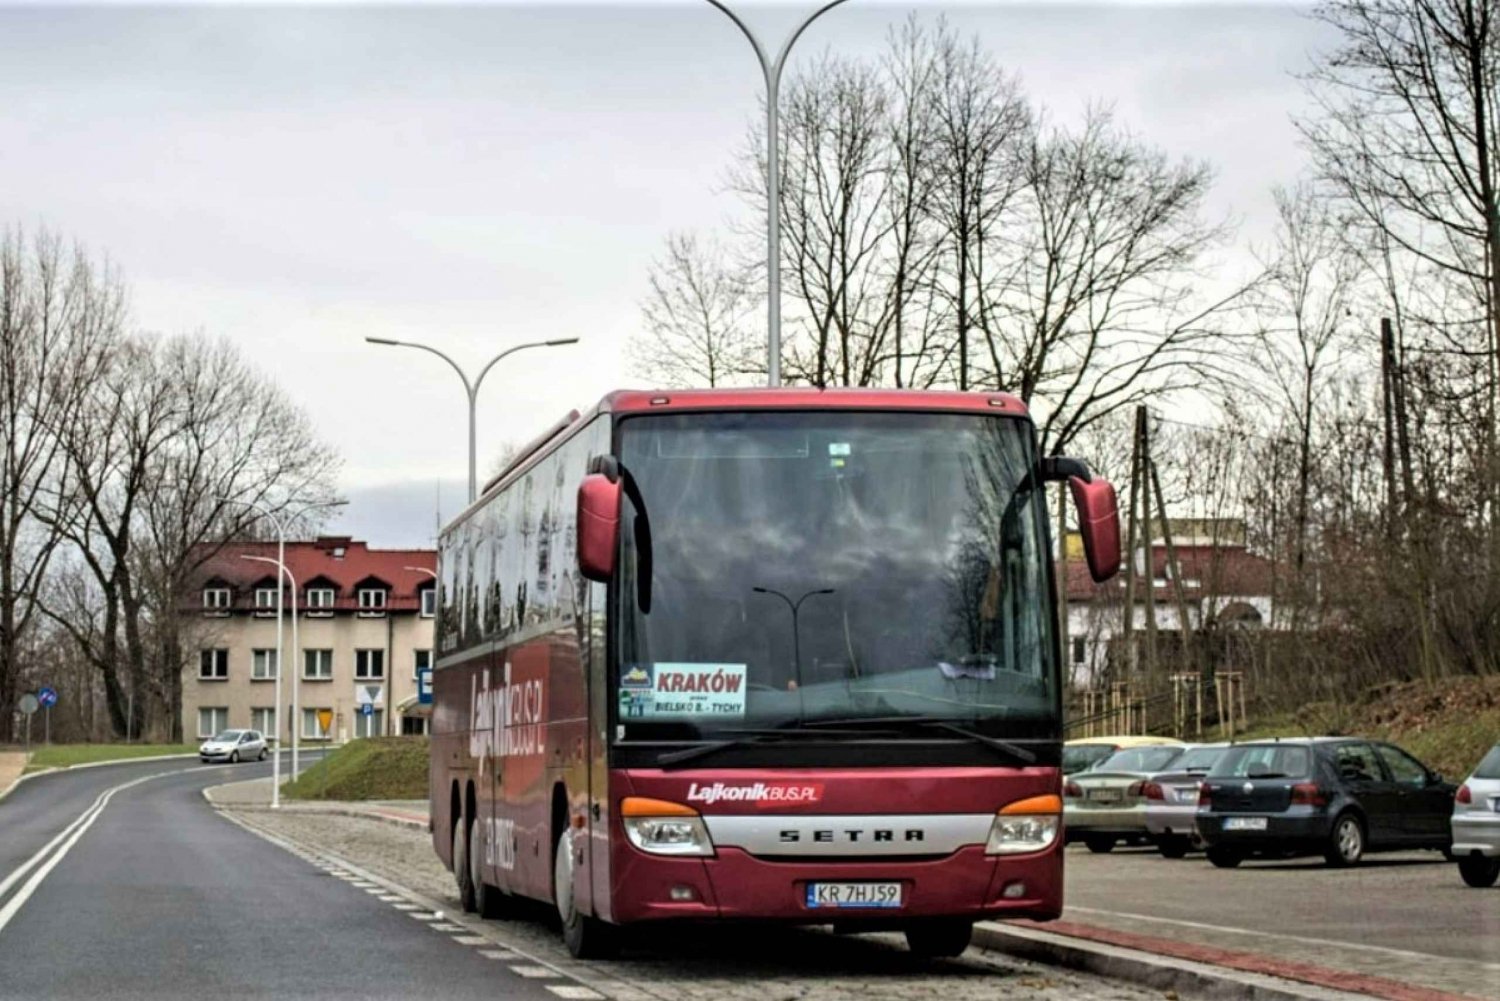 Von Krakau aus: Auschwitz-Birkenau Bustransfer (Hin- und Rückfahrt)